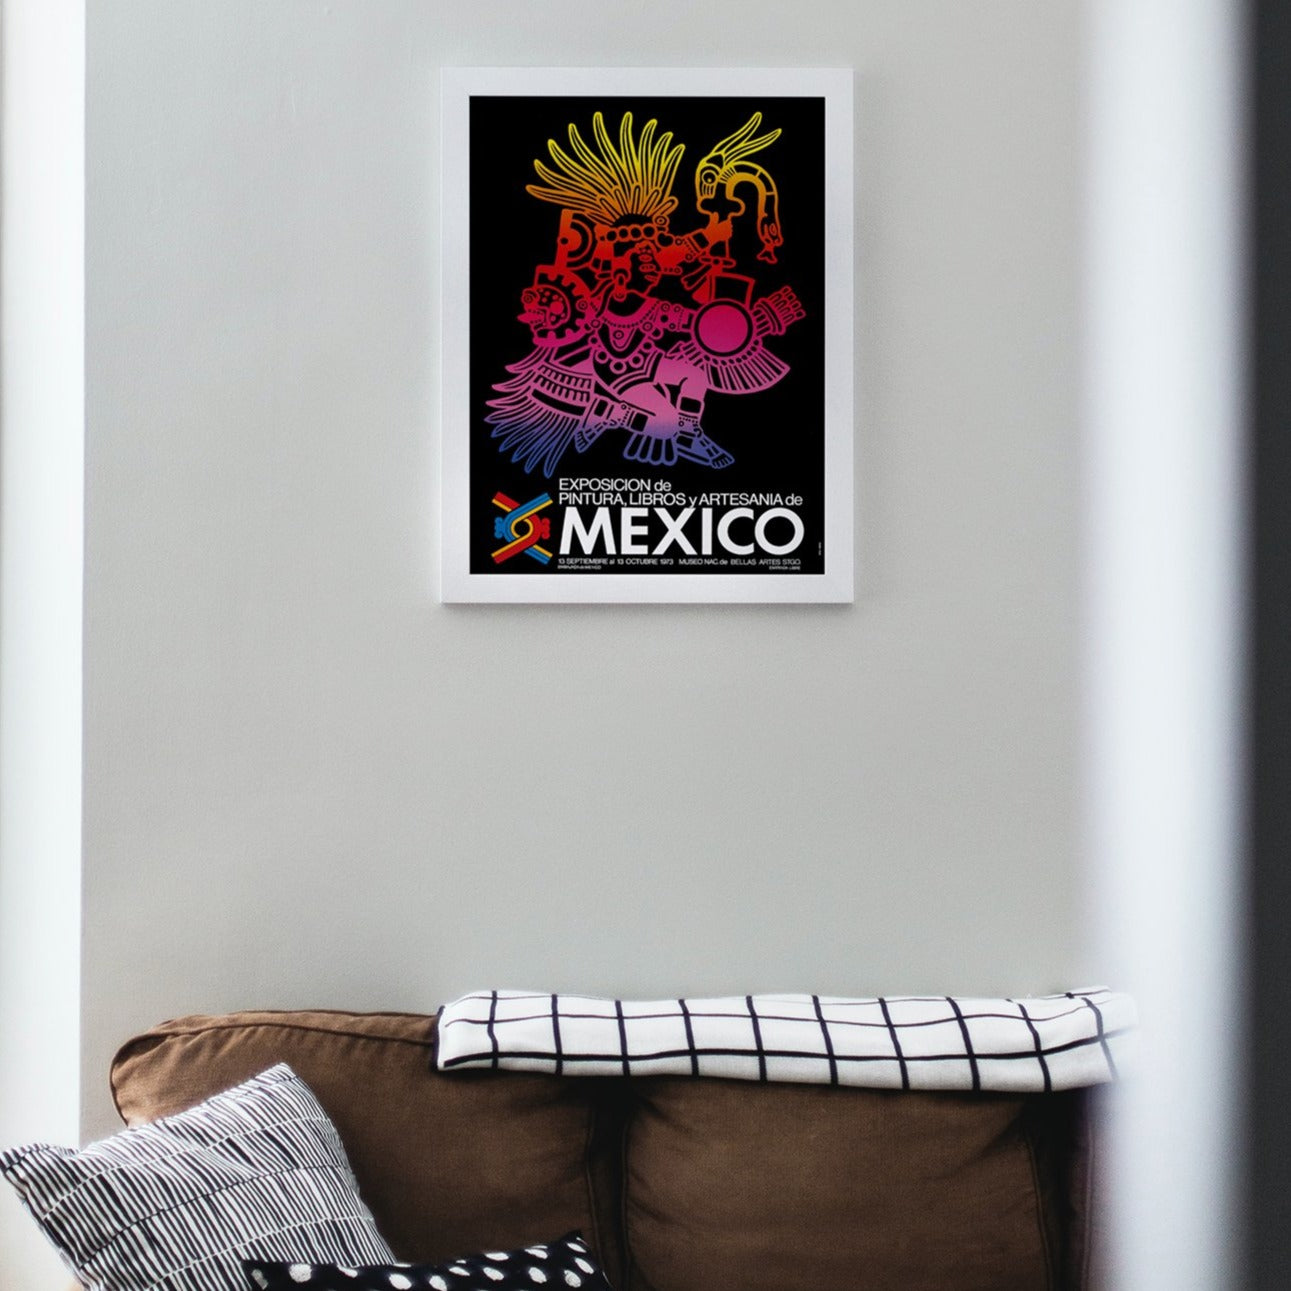 Afiche "Exposición Pinturas, Libros y Artesanías de México"